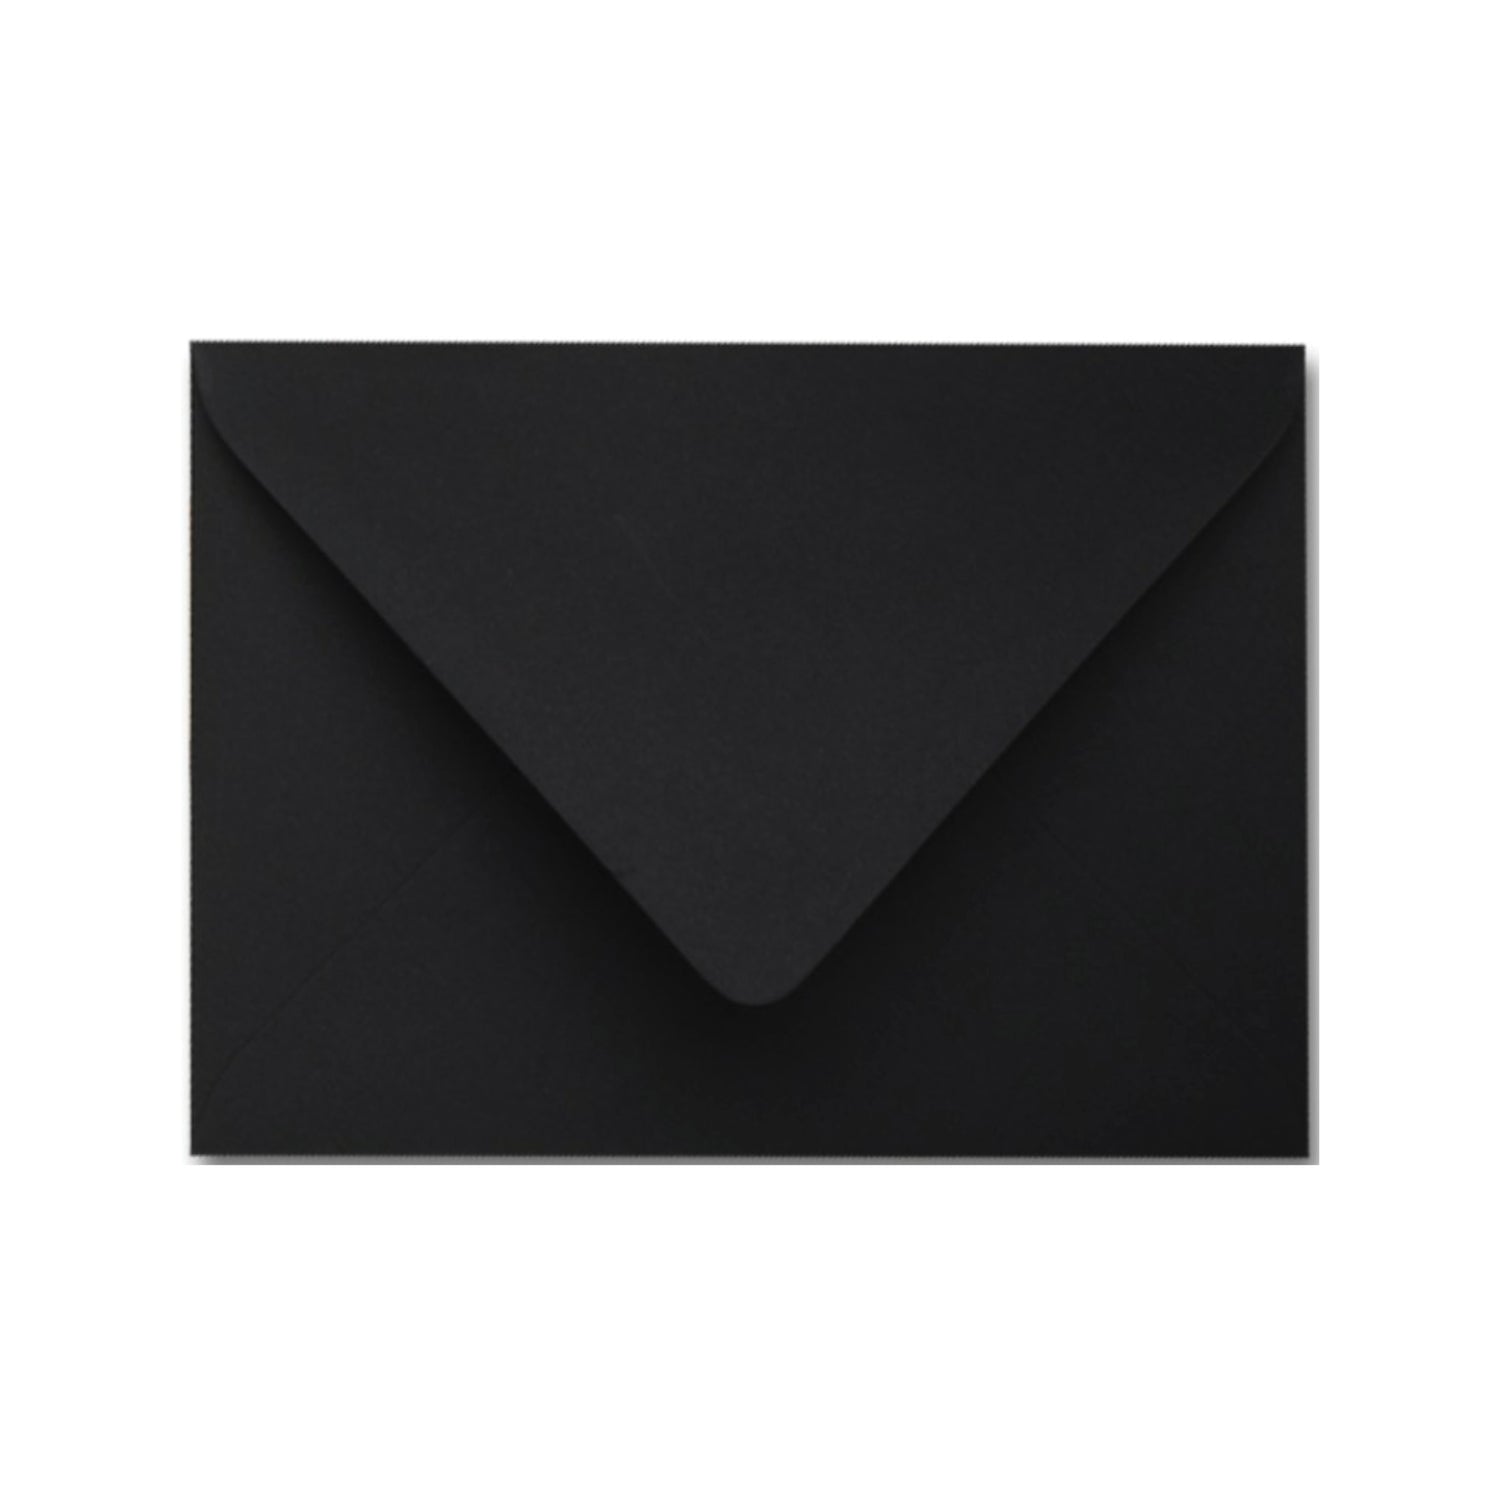 Black Envelopes - Pack of 25